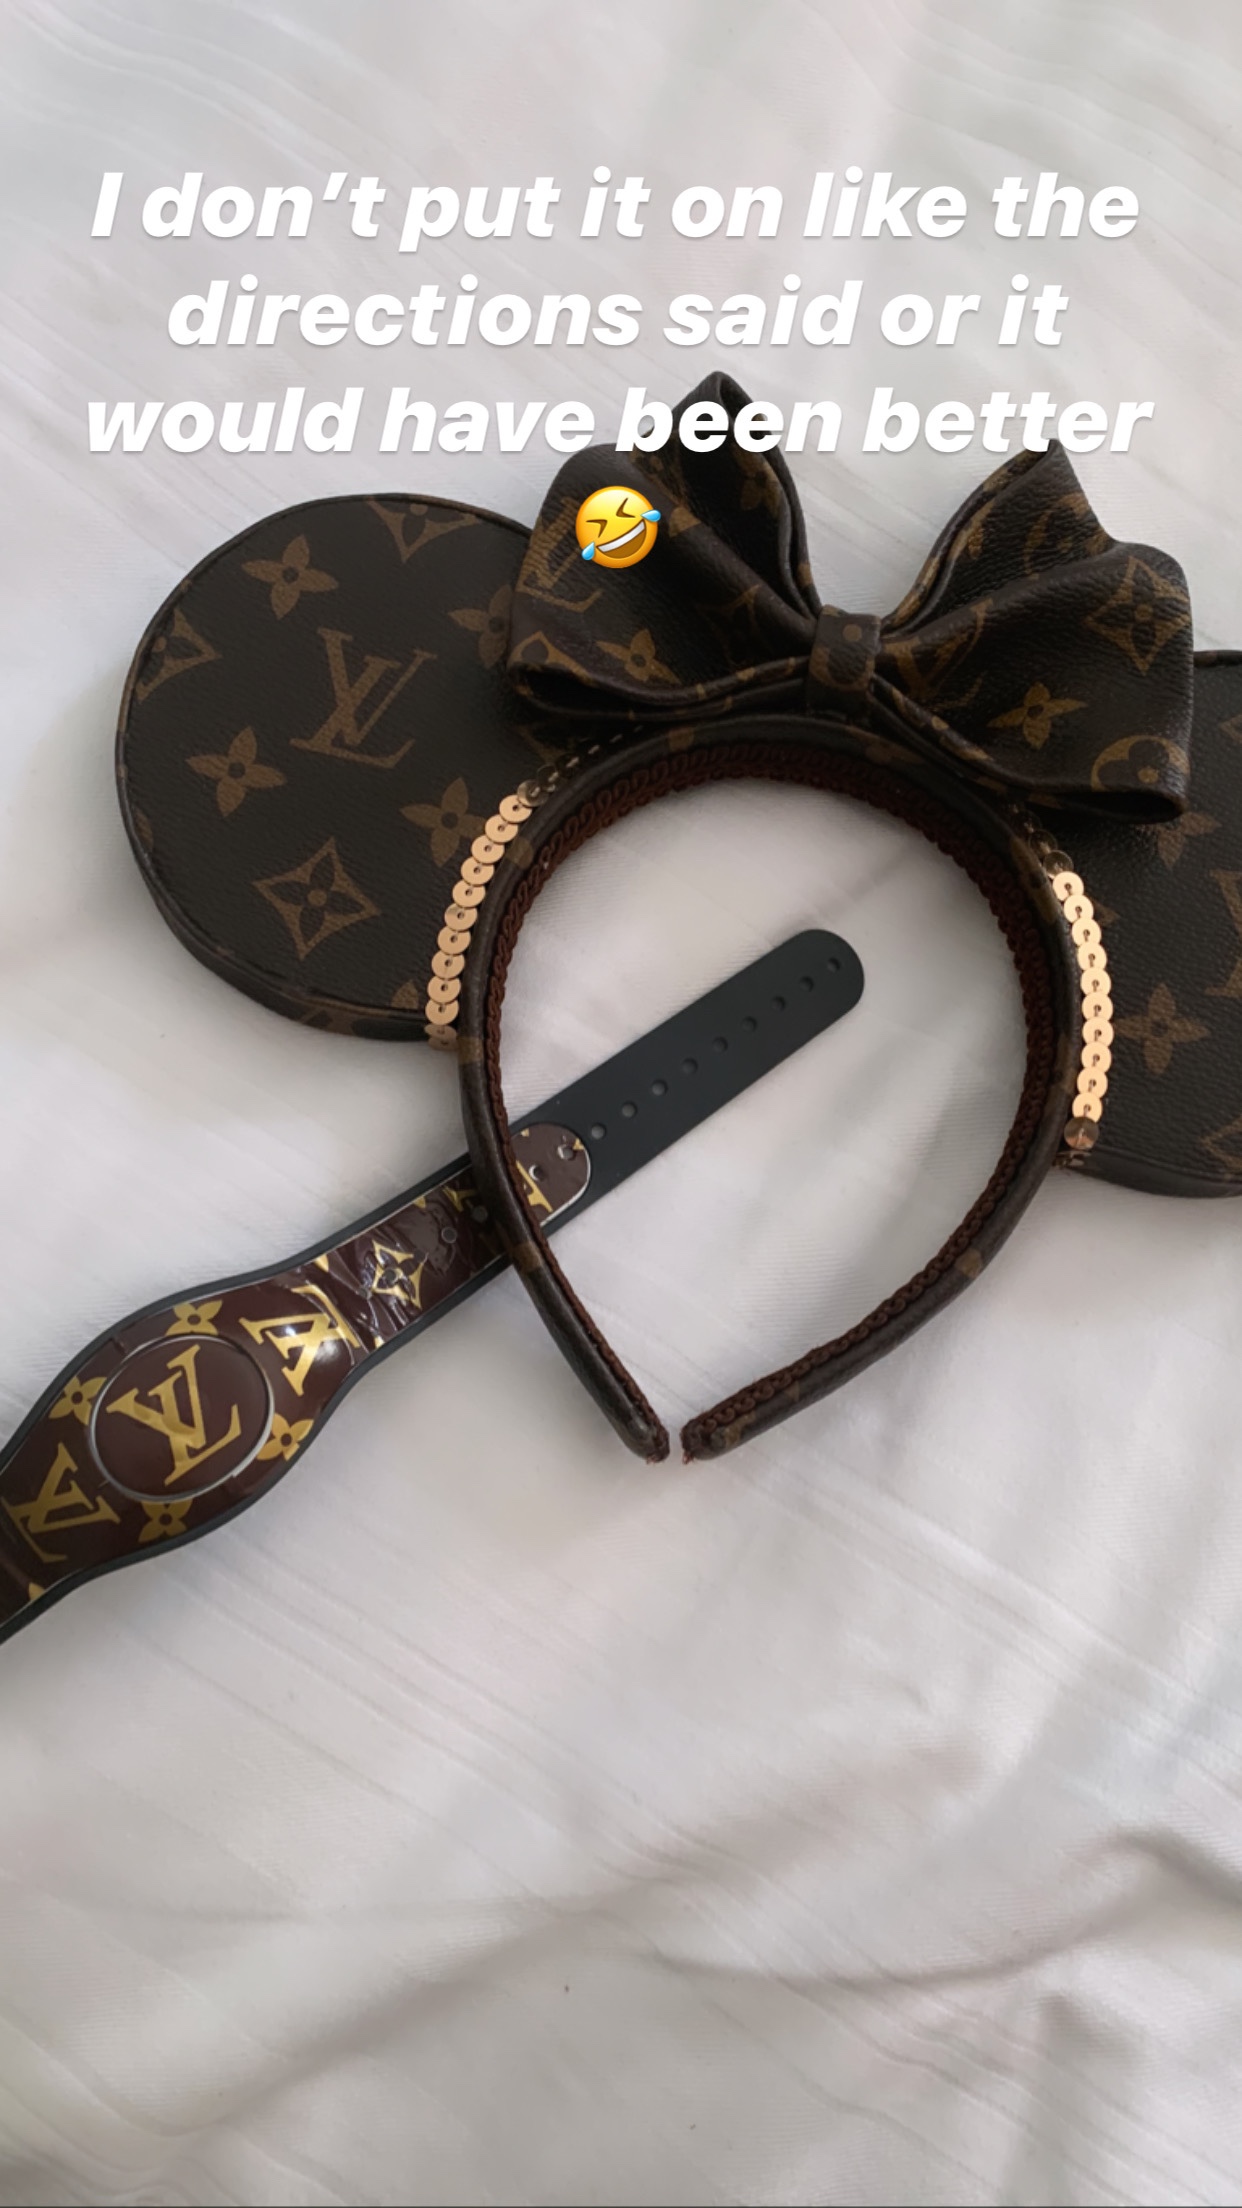 Louis Vuitton Mickey Mouse Headband